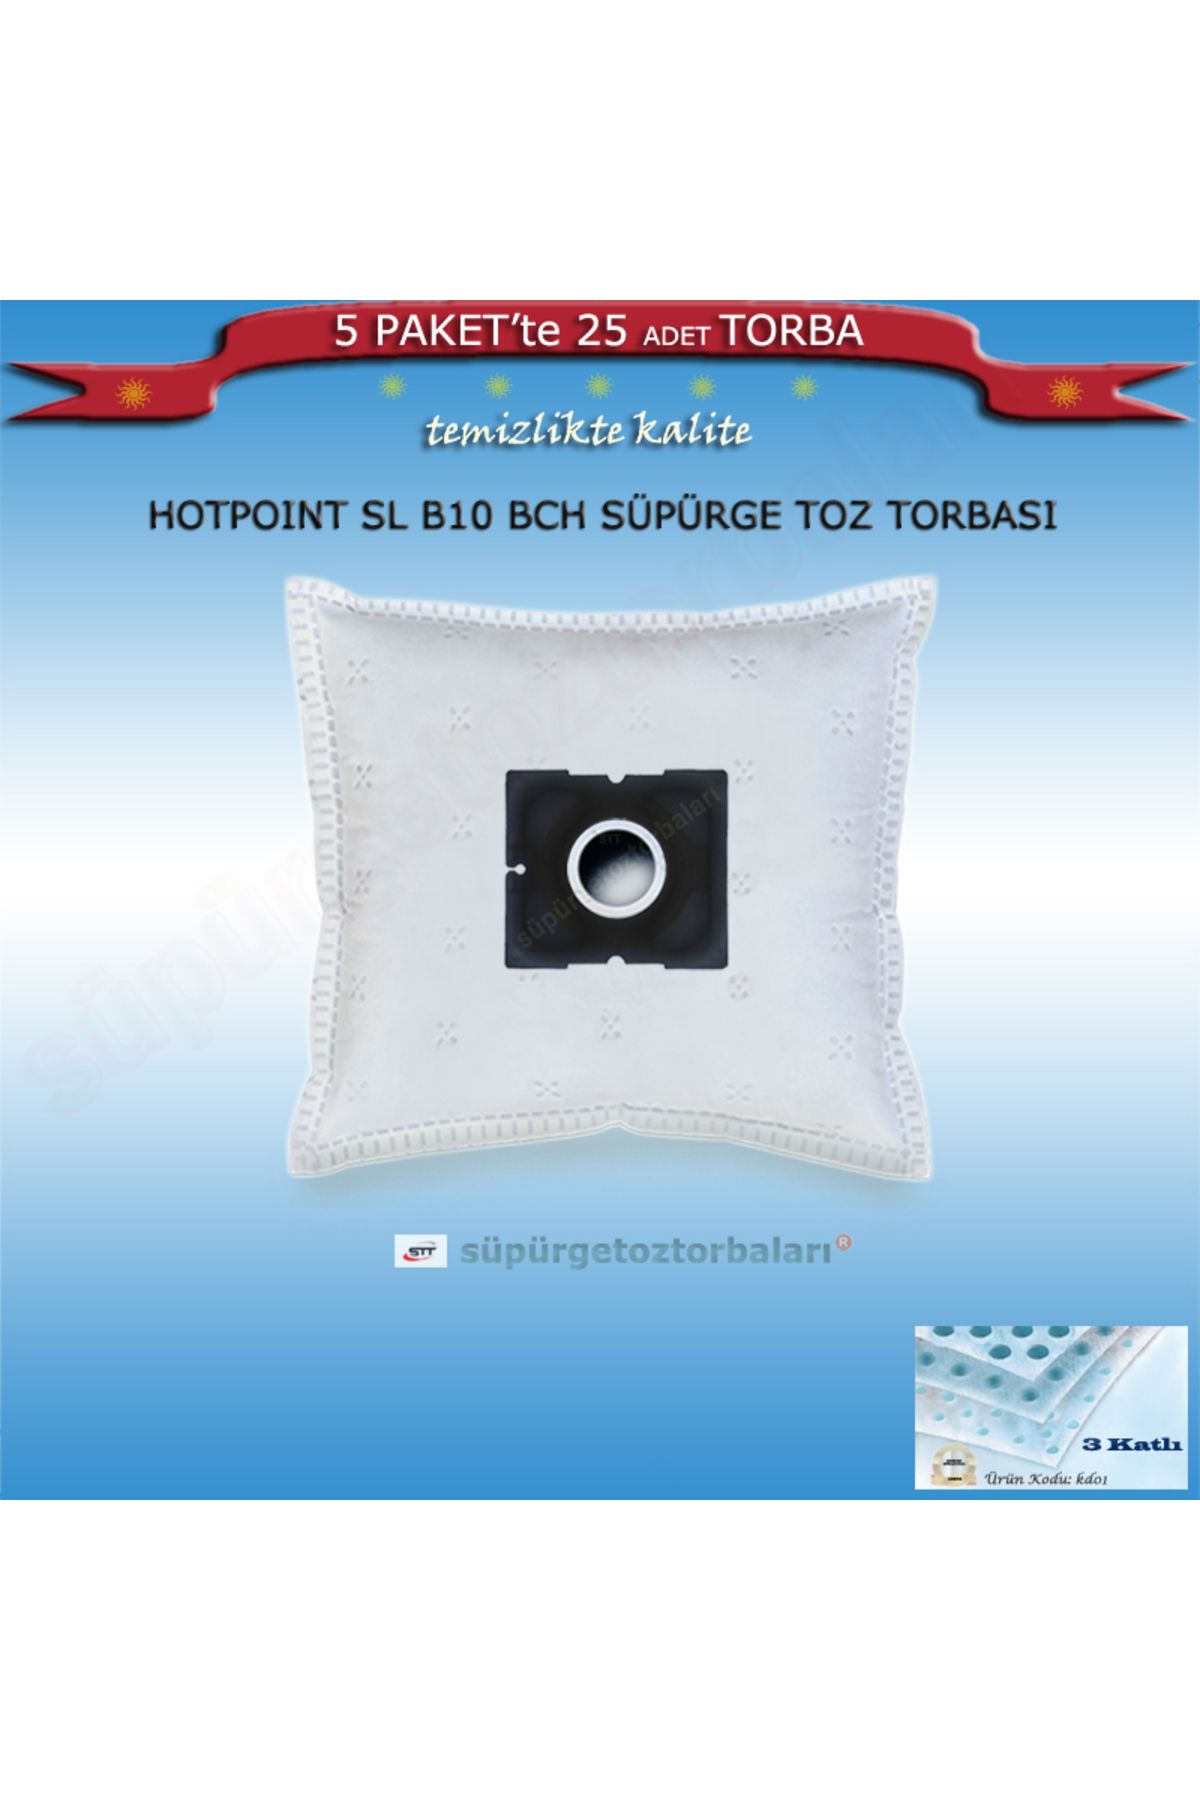 Hotpoint Sl B10 Bch Süpürge Toz Torbası 25 Adet Torba Kd01